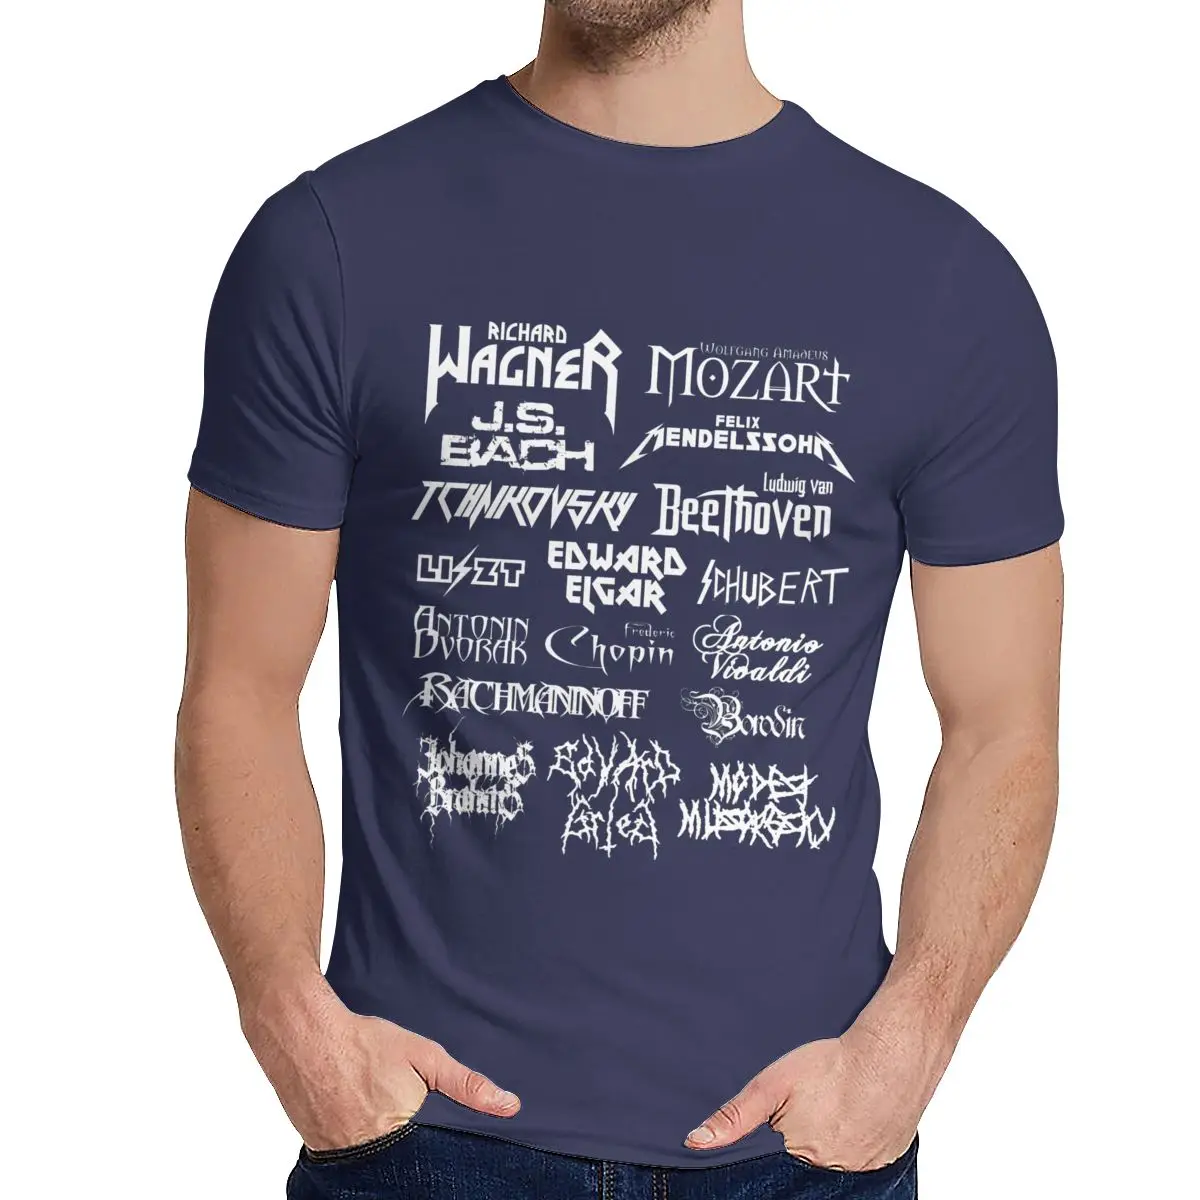 Классическая футболка из тяжелого металла для композиторов мужские повседневные футболки Mozart Beethoven Chopin Bach delssohn из хлопка - Цвет: Тёмно-синий